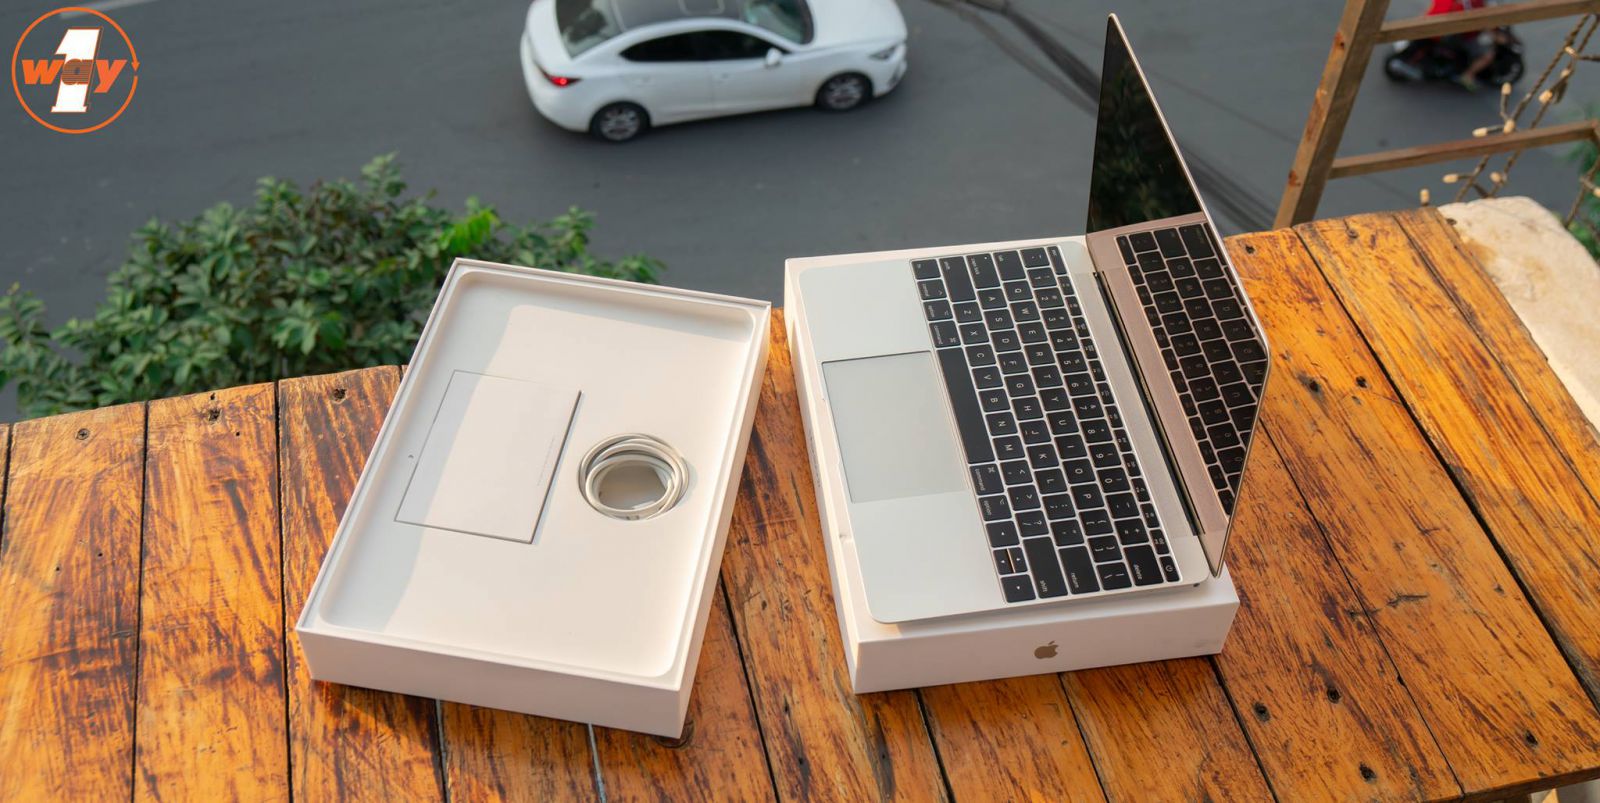 MacBook 12 inch chính thức dùng sản xuất từ năm 2018